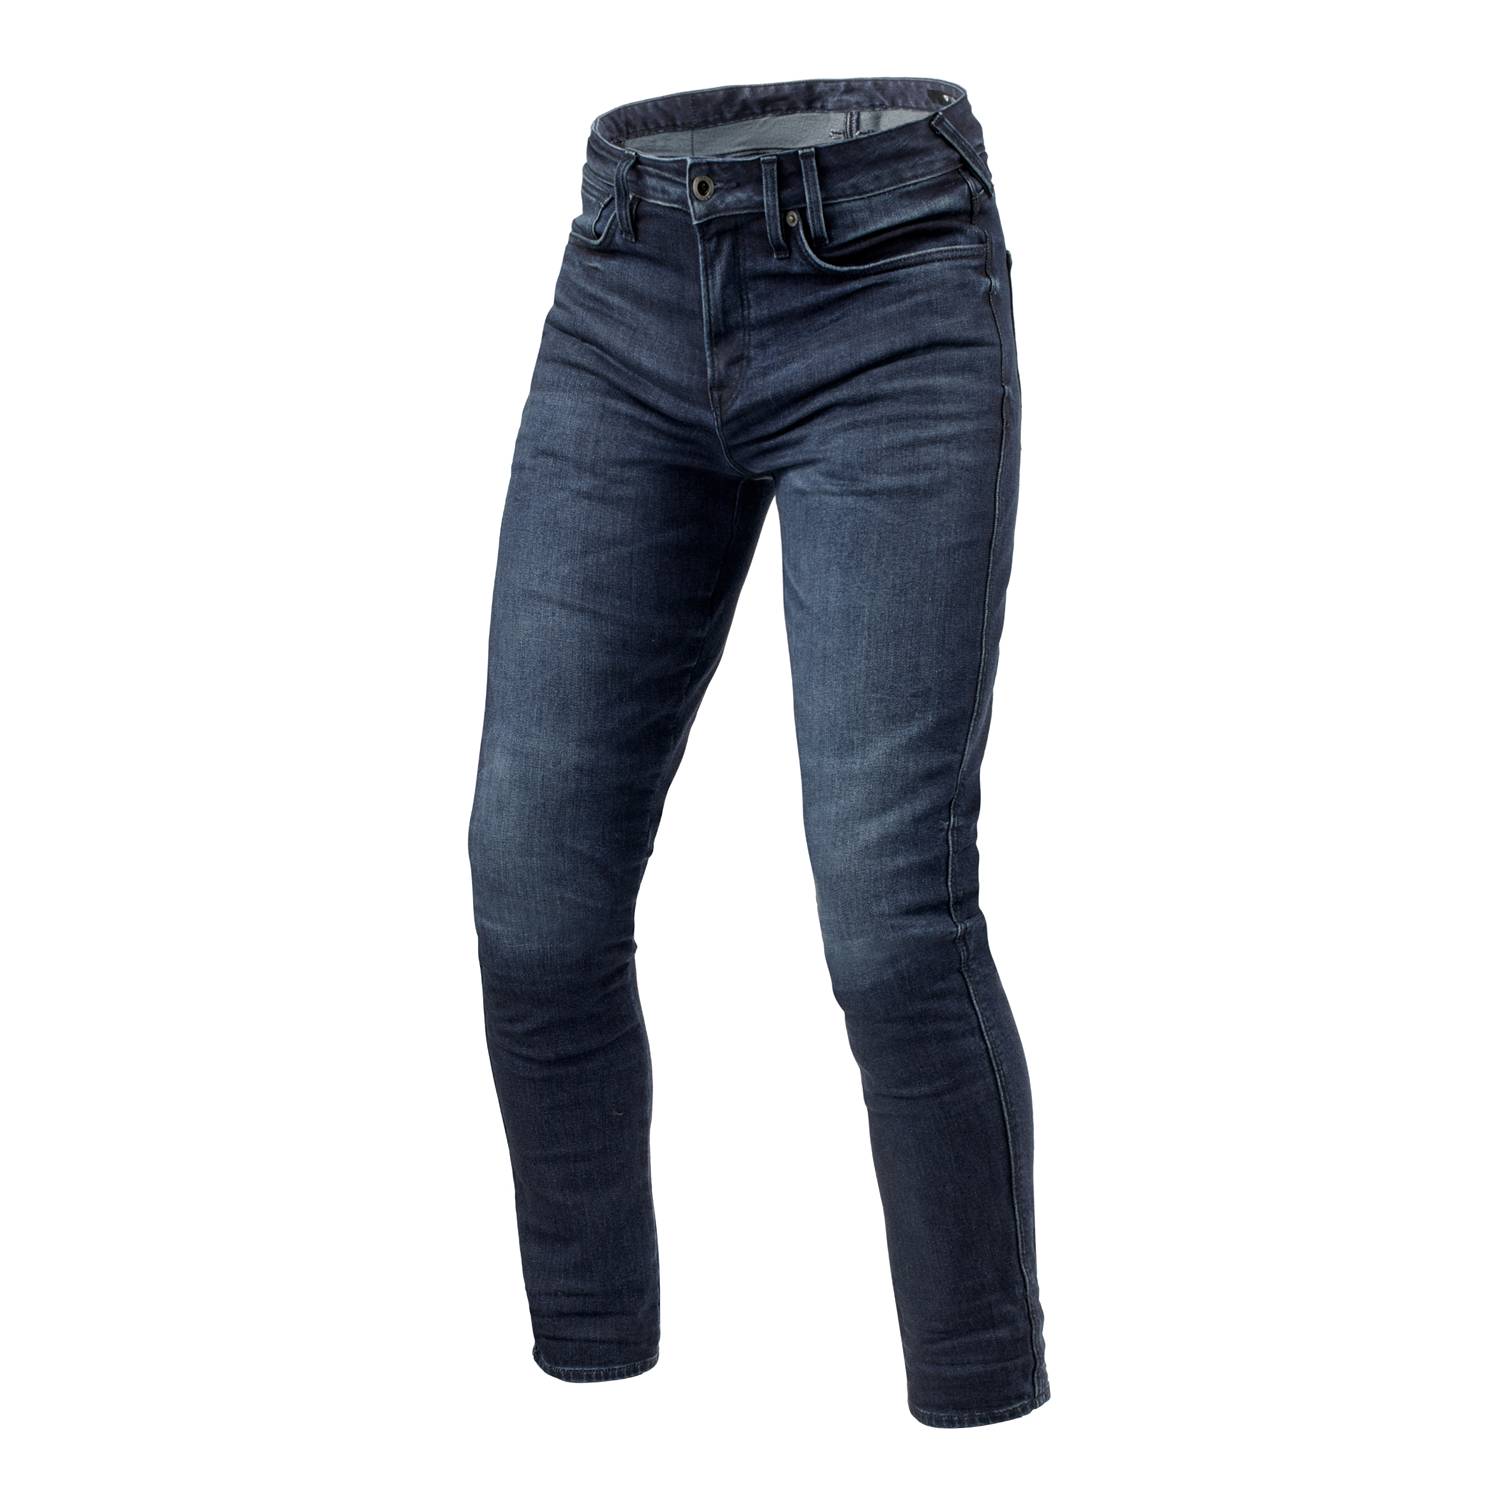 Image of REV'IT! Jeans Carlin SK Dark Blue Used L32 Motorcycle Jeans Size L32/W33 EN